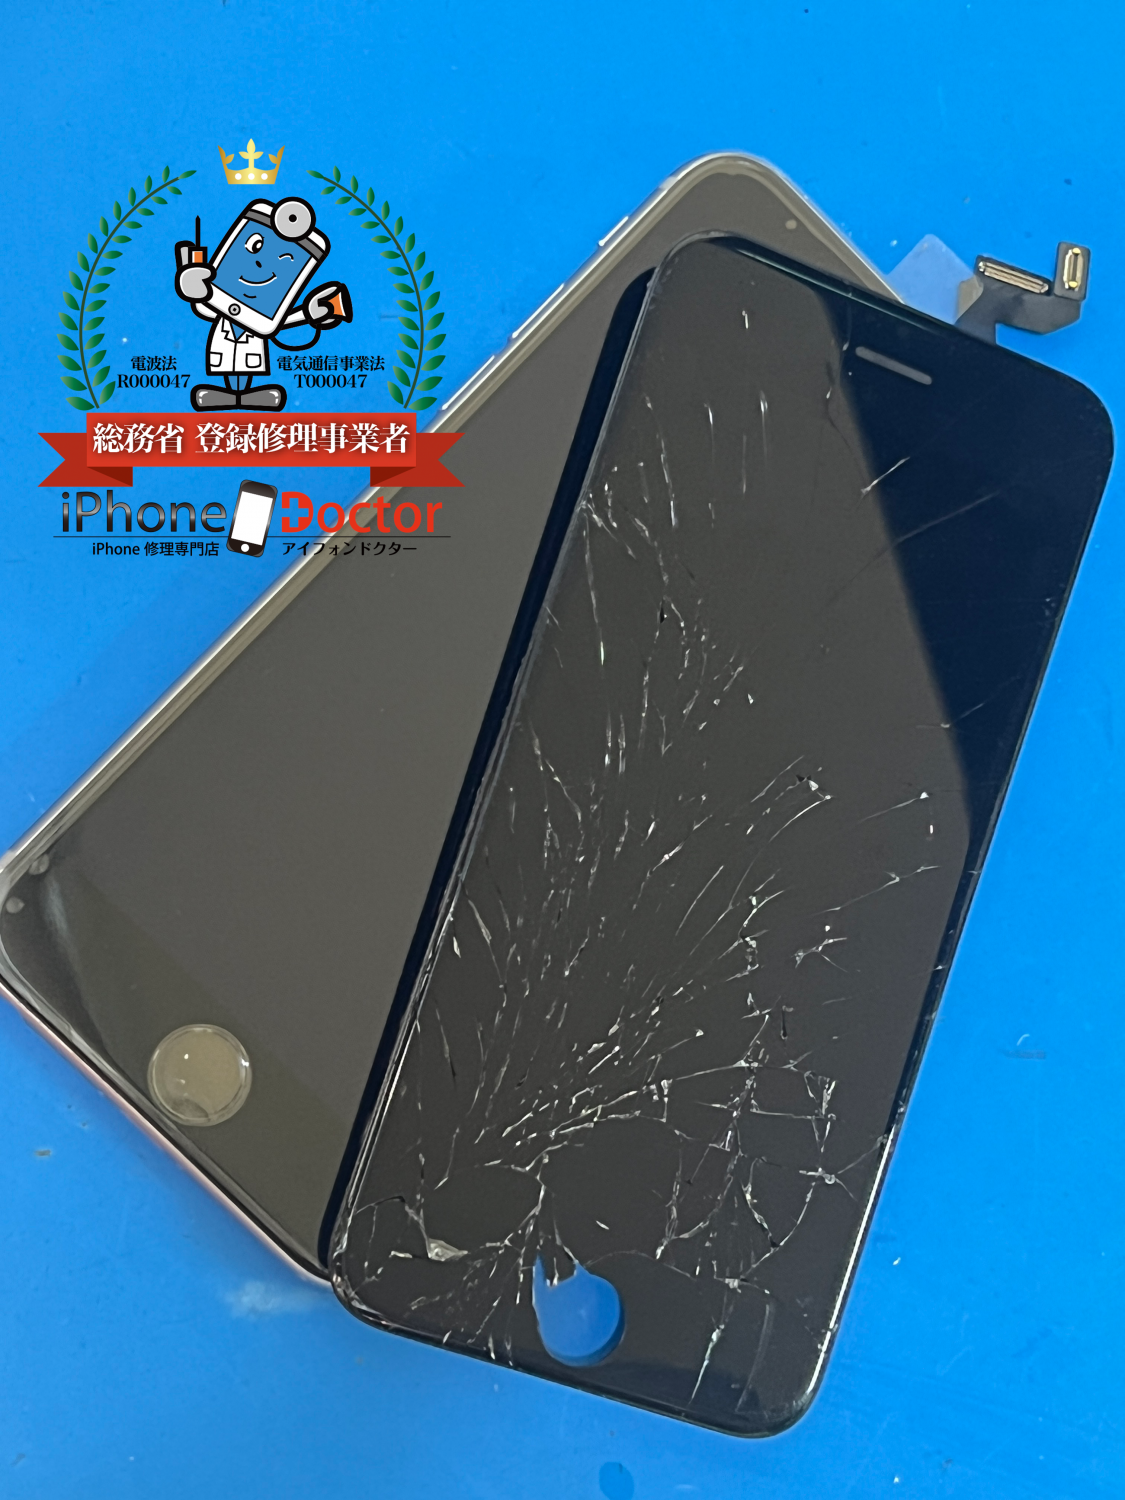 iPhone6sガラスが割れ、液晶破損